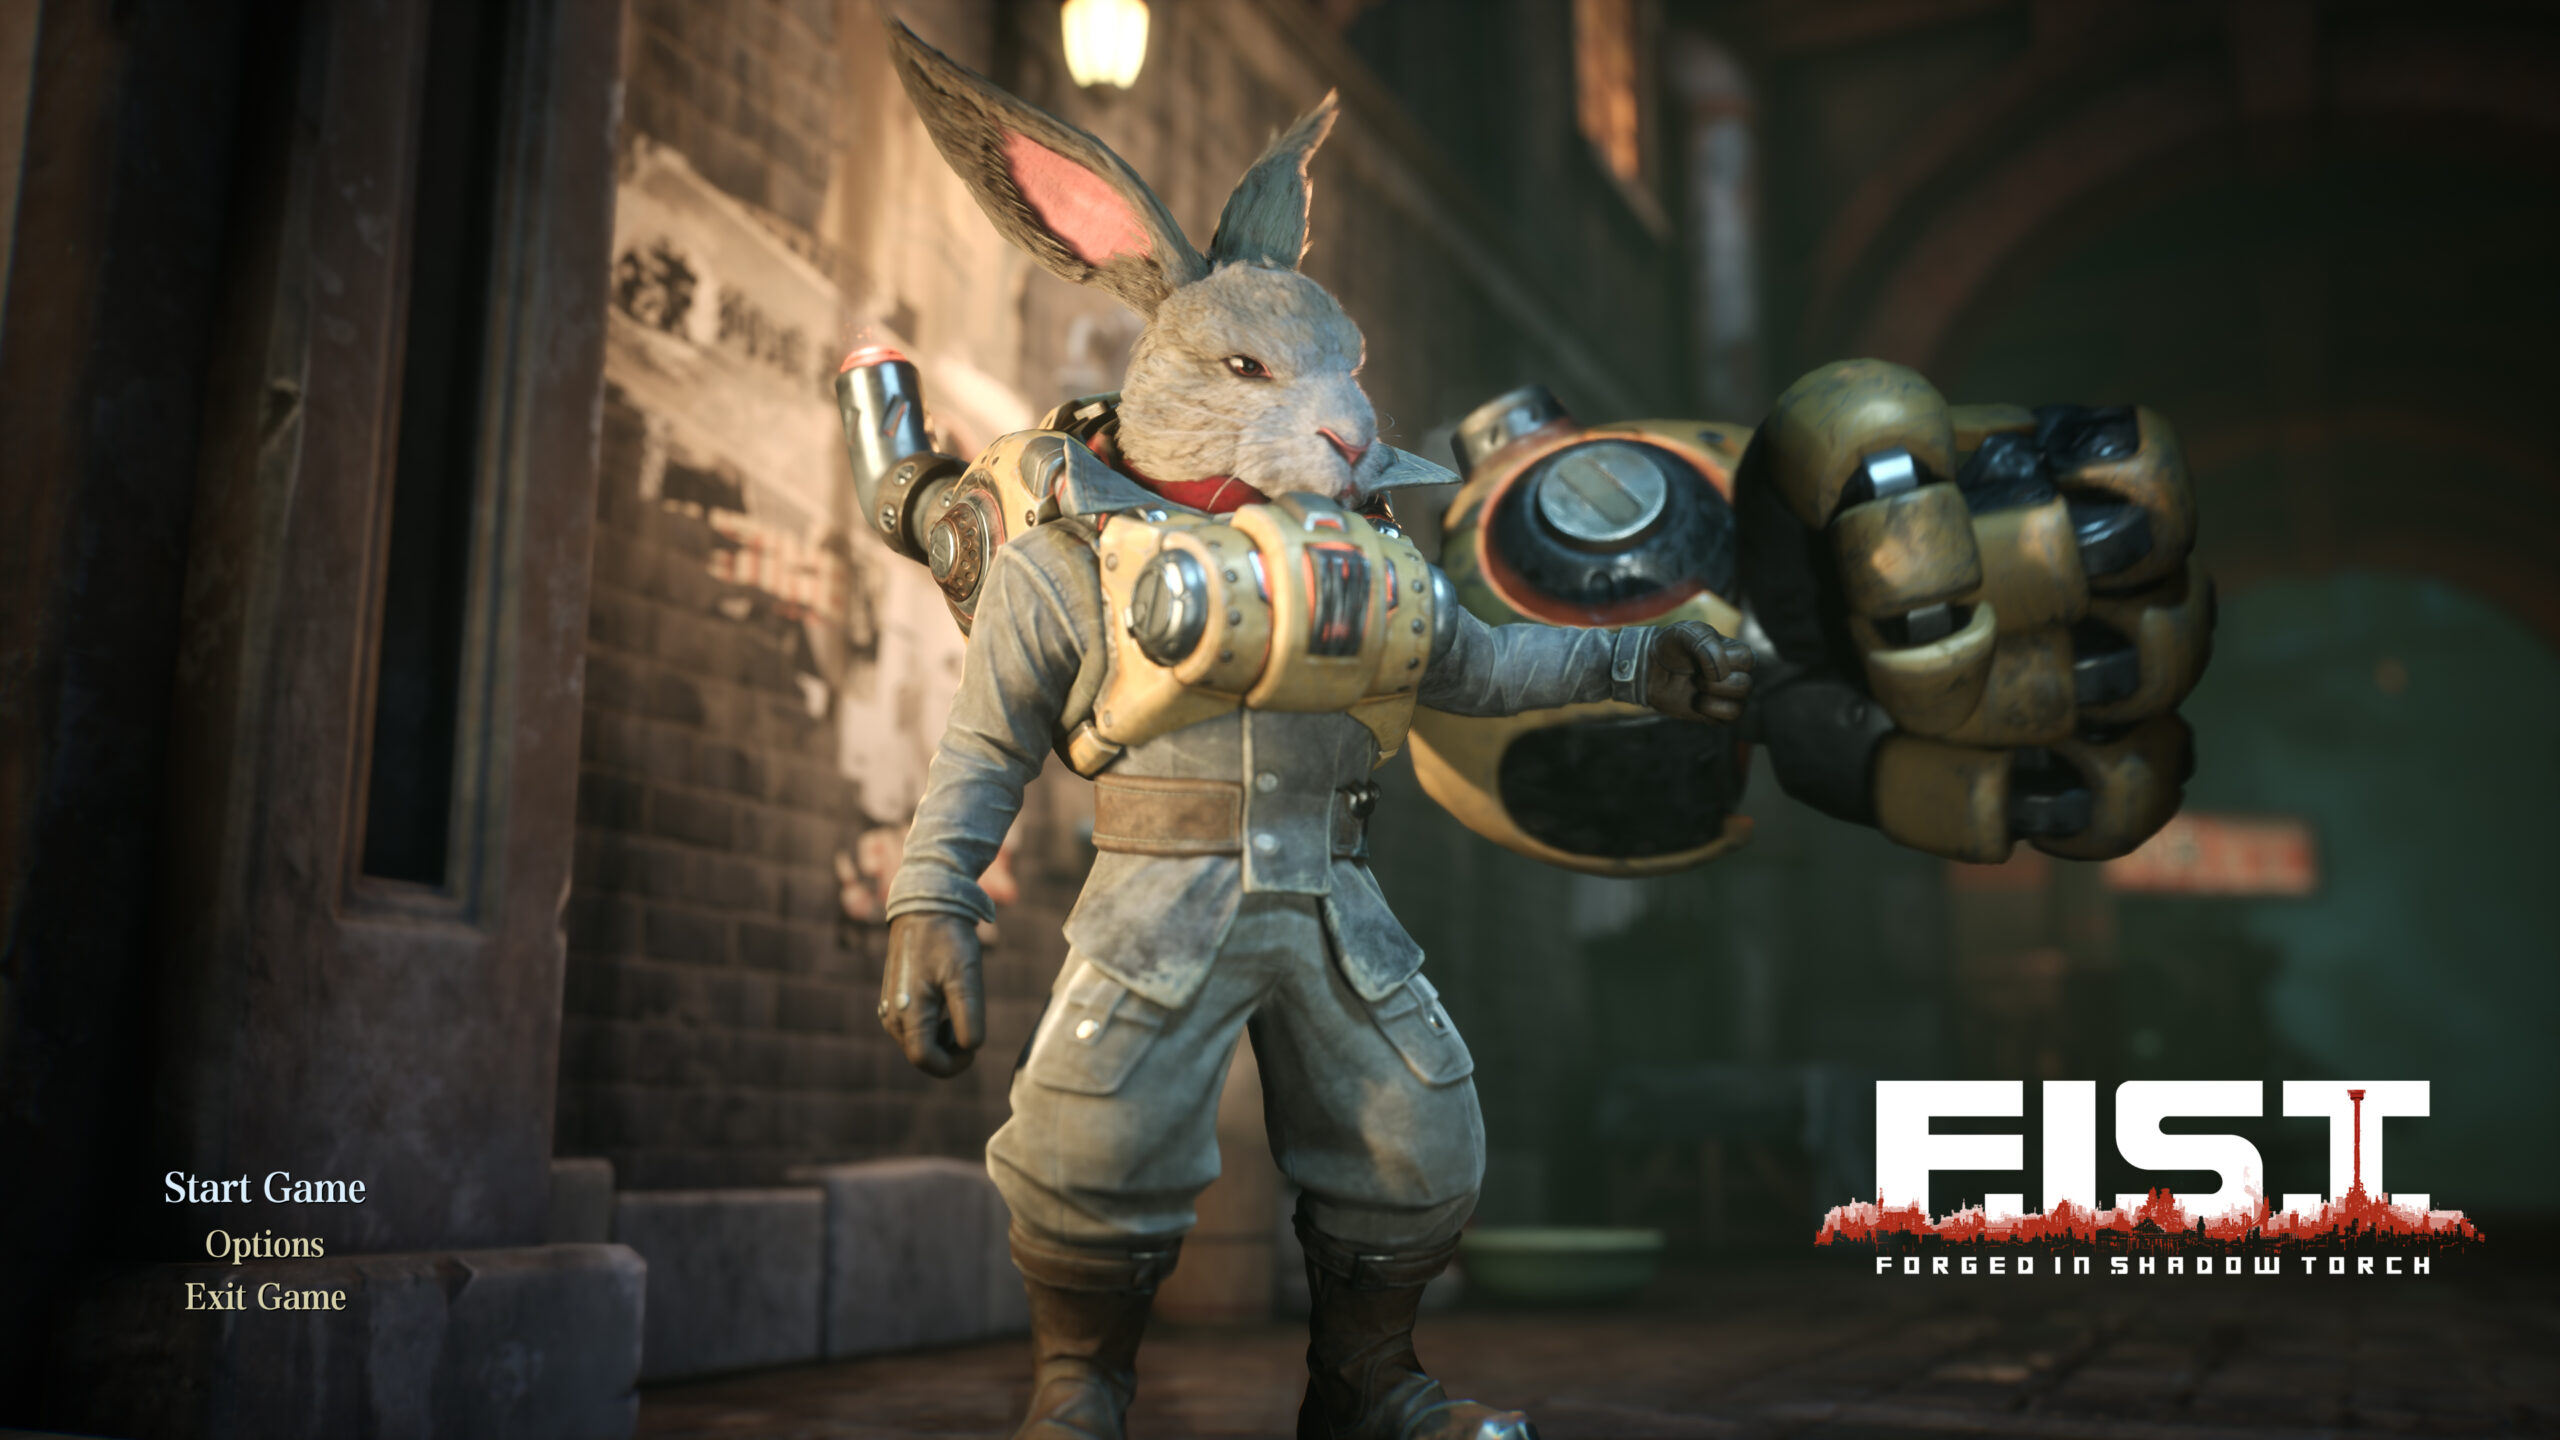 NVIDIA anunció que F.I.S.T.: Forged in Shadow Torch se lanzó para PC, y el juego está cargado de tecnología, que incluye NVIDIA DLSS